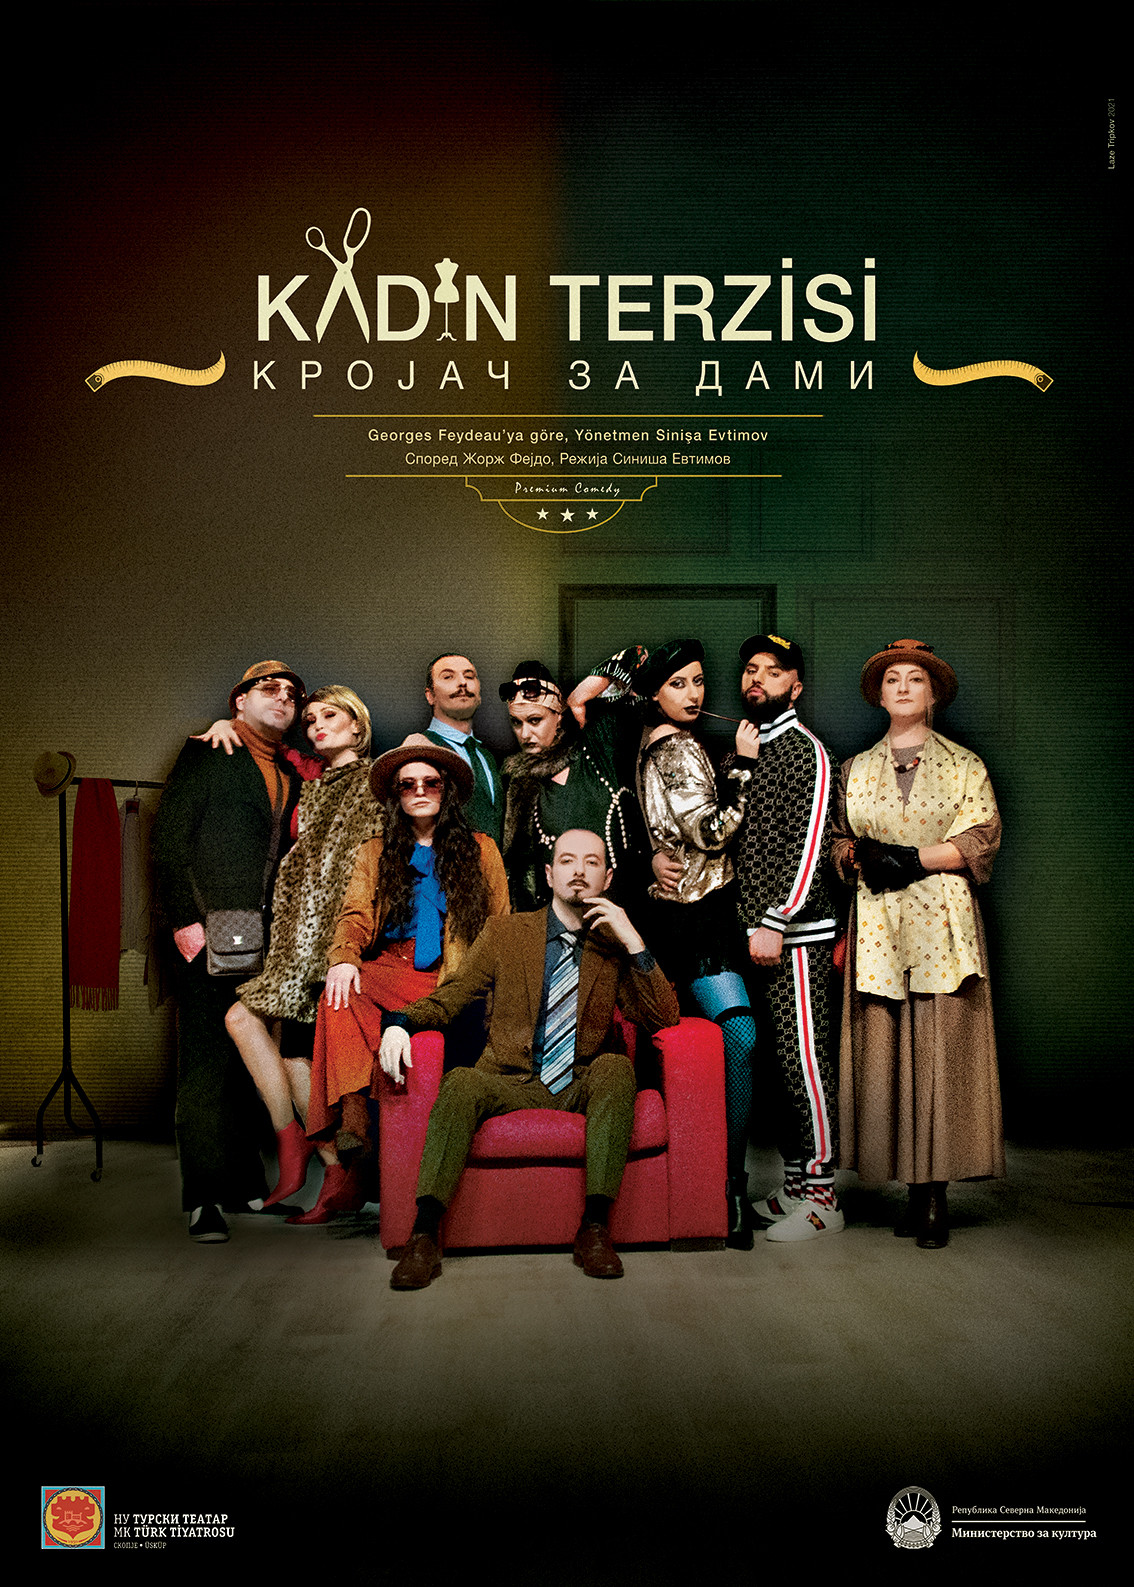 10.ULS.BAL.FEST. KADIN TERZİSİ - Milli Kurum Türk Tiyatrosu-Üsküp